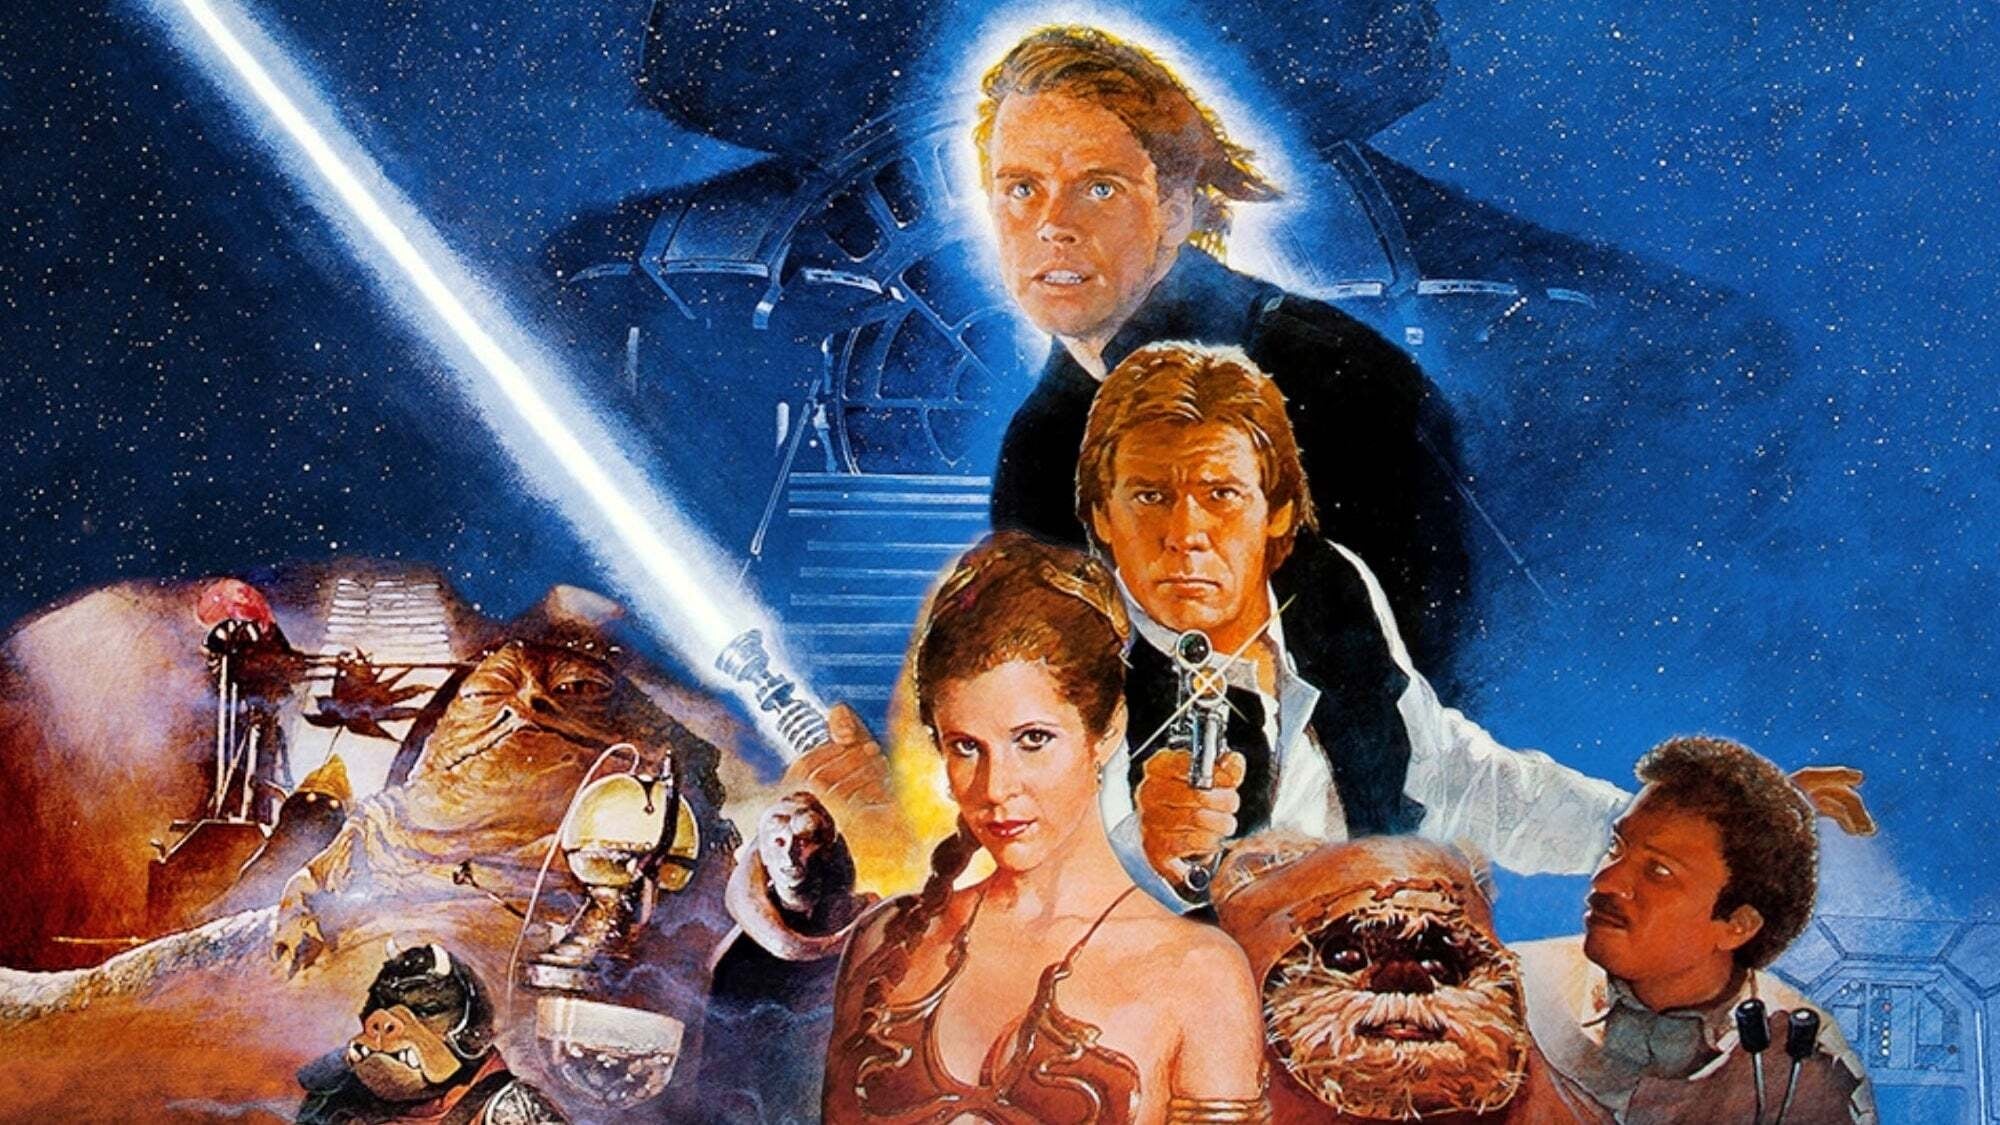 Image du film Star Wars, édition spéciale : le retour du Jedi 9gusdktqxj129xlptqpewcevgsbjpg